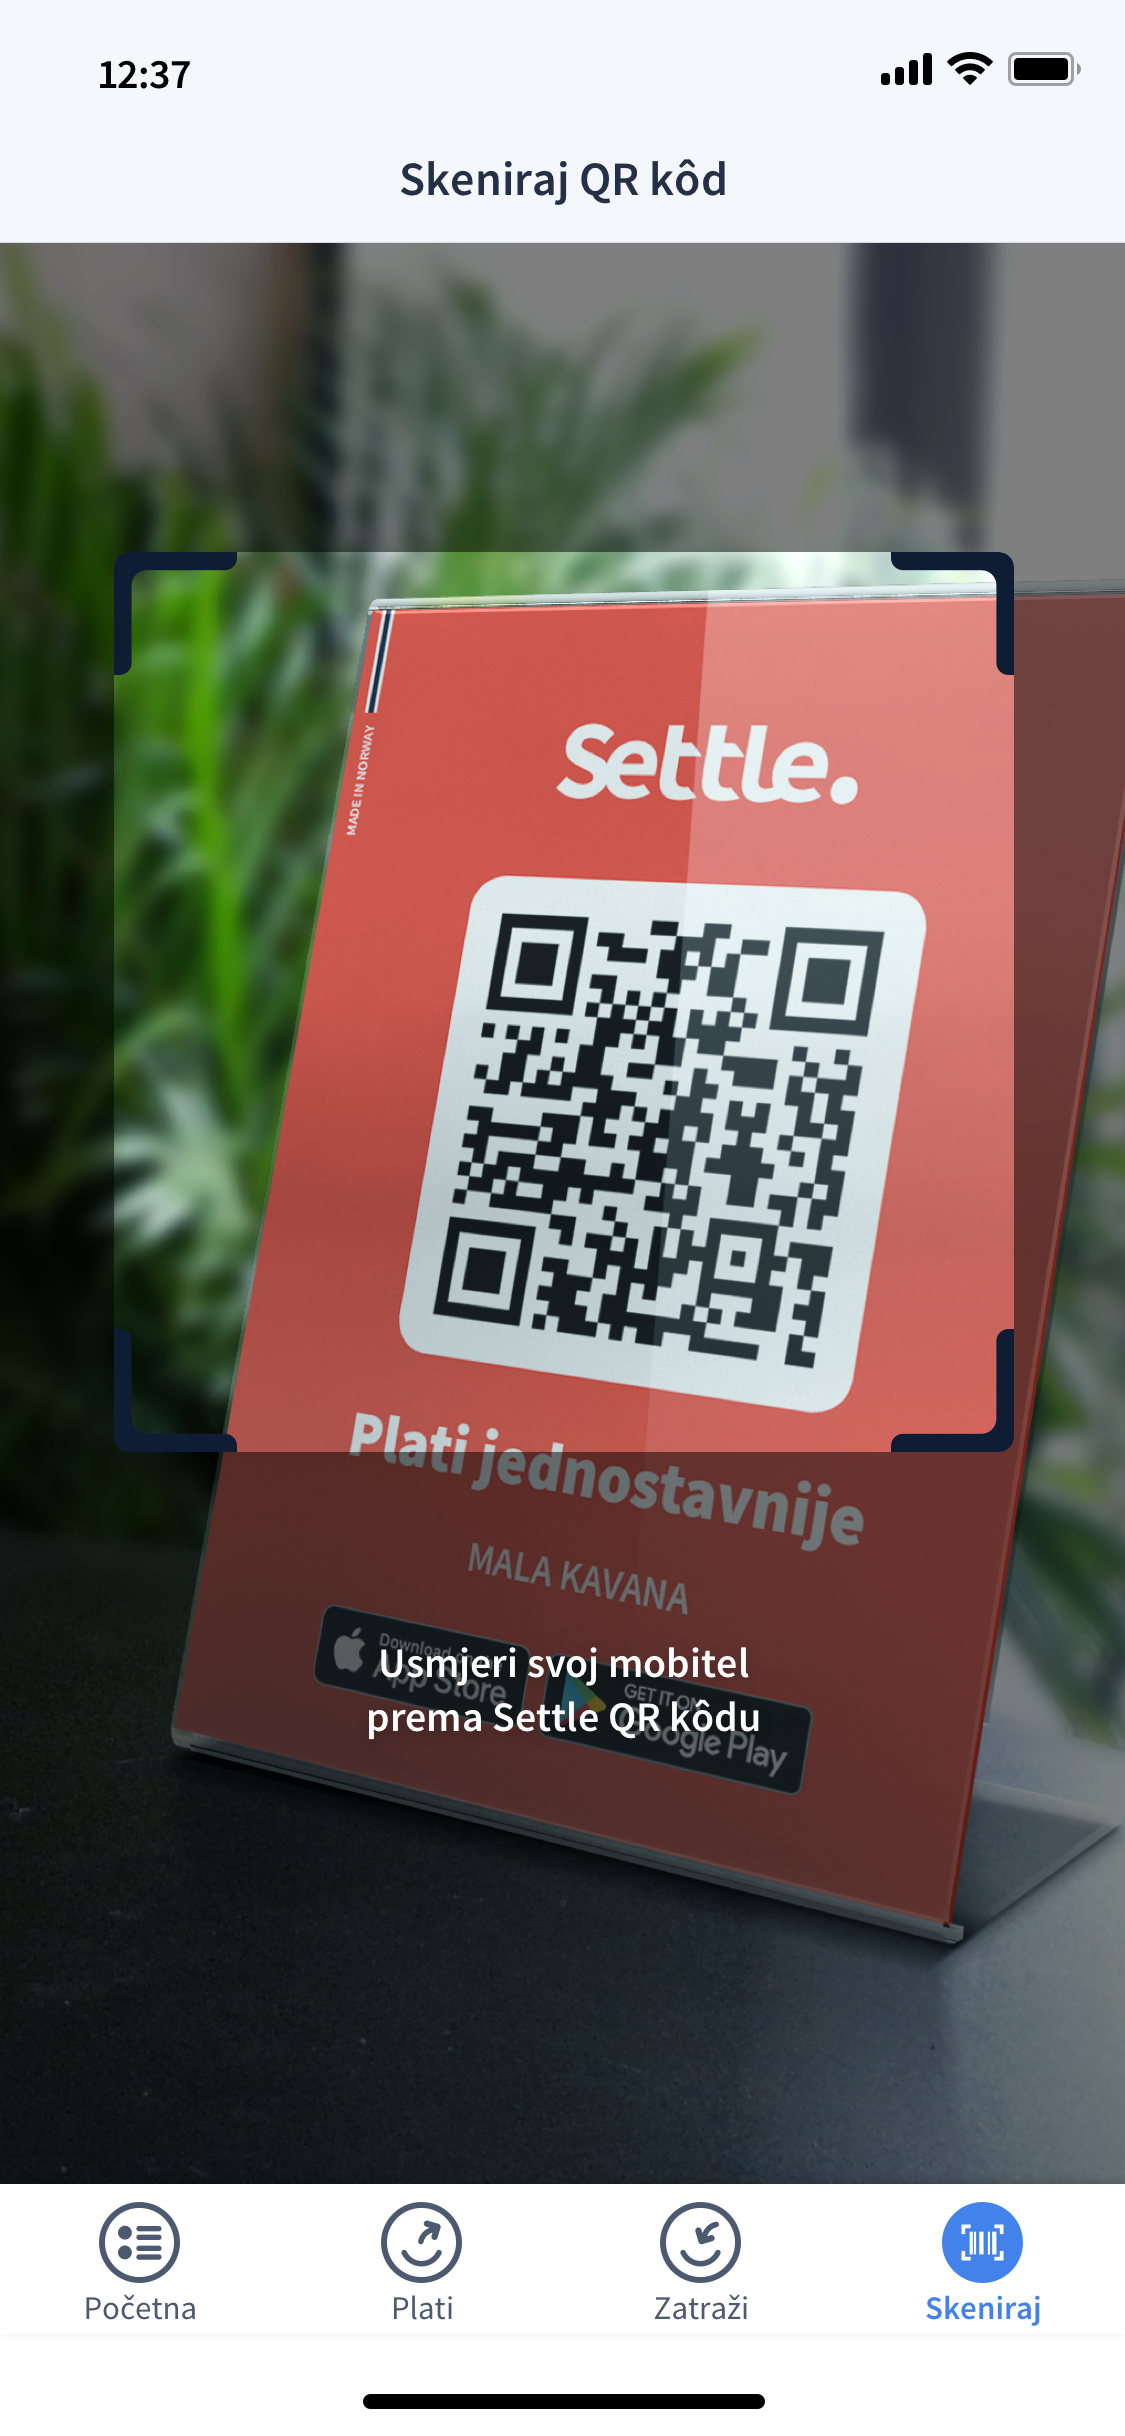 Settle postao pravi novčanik: Aplikacijom možete i plaćati